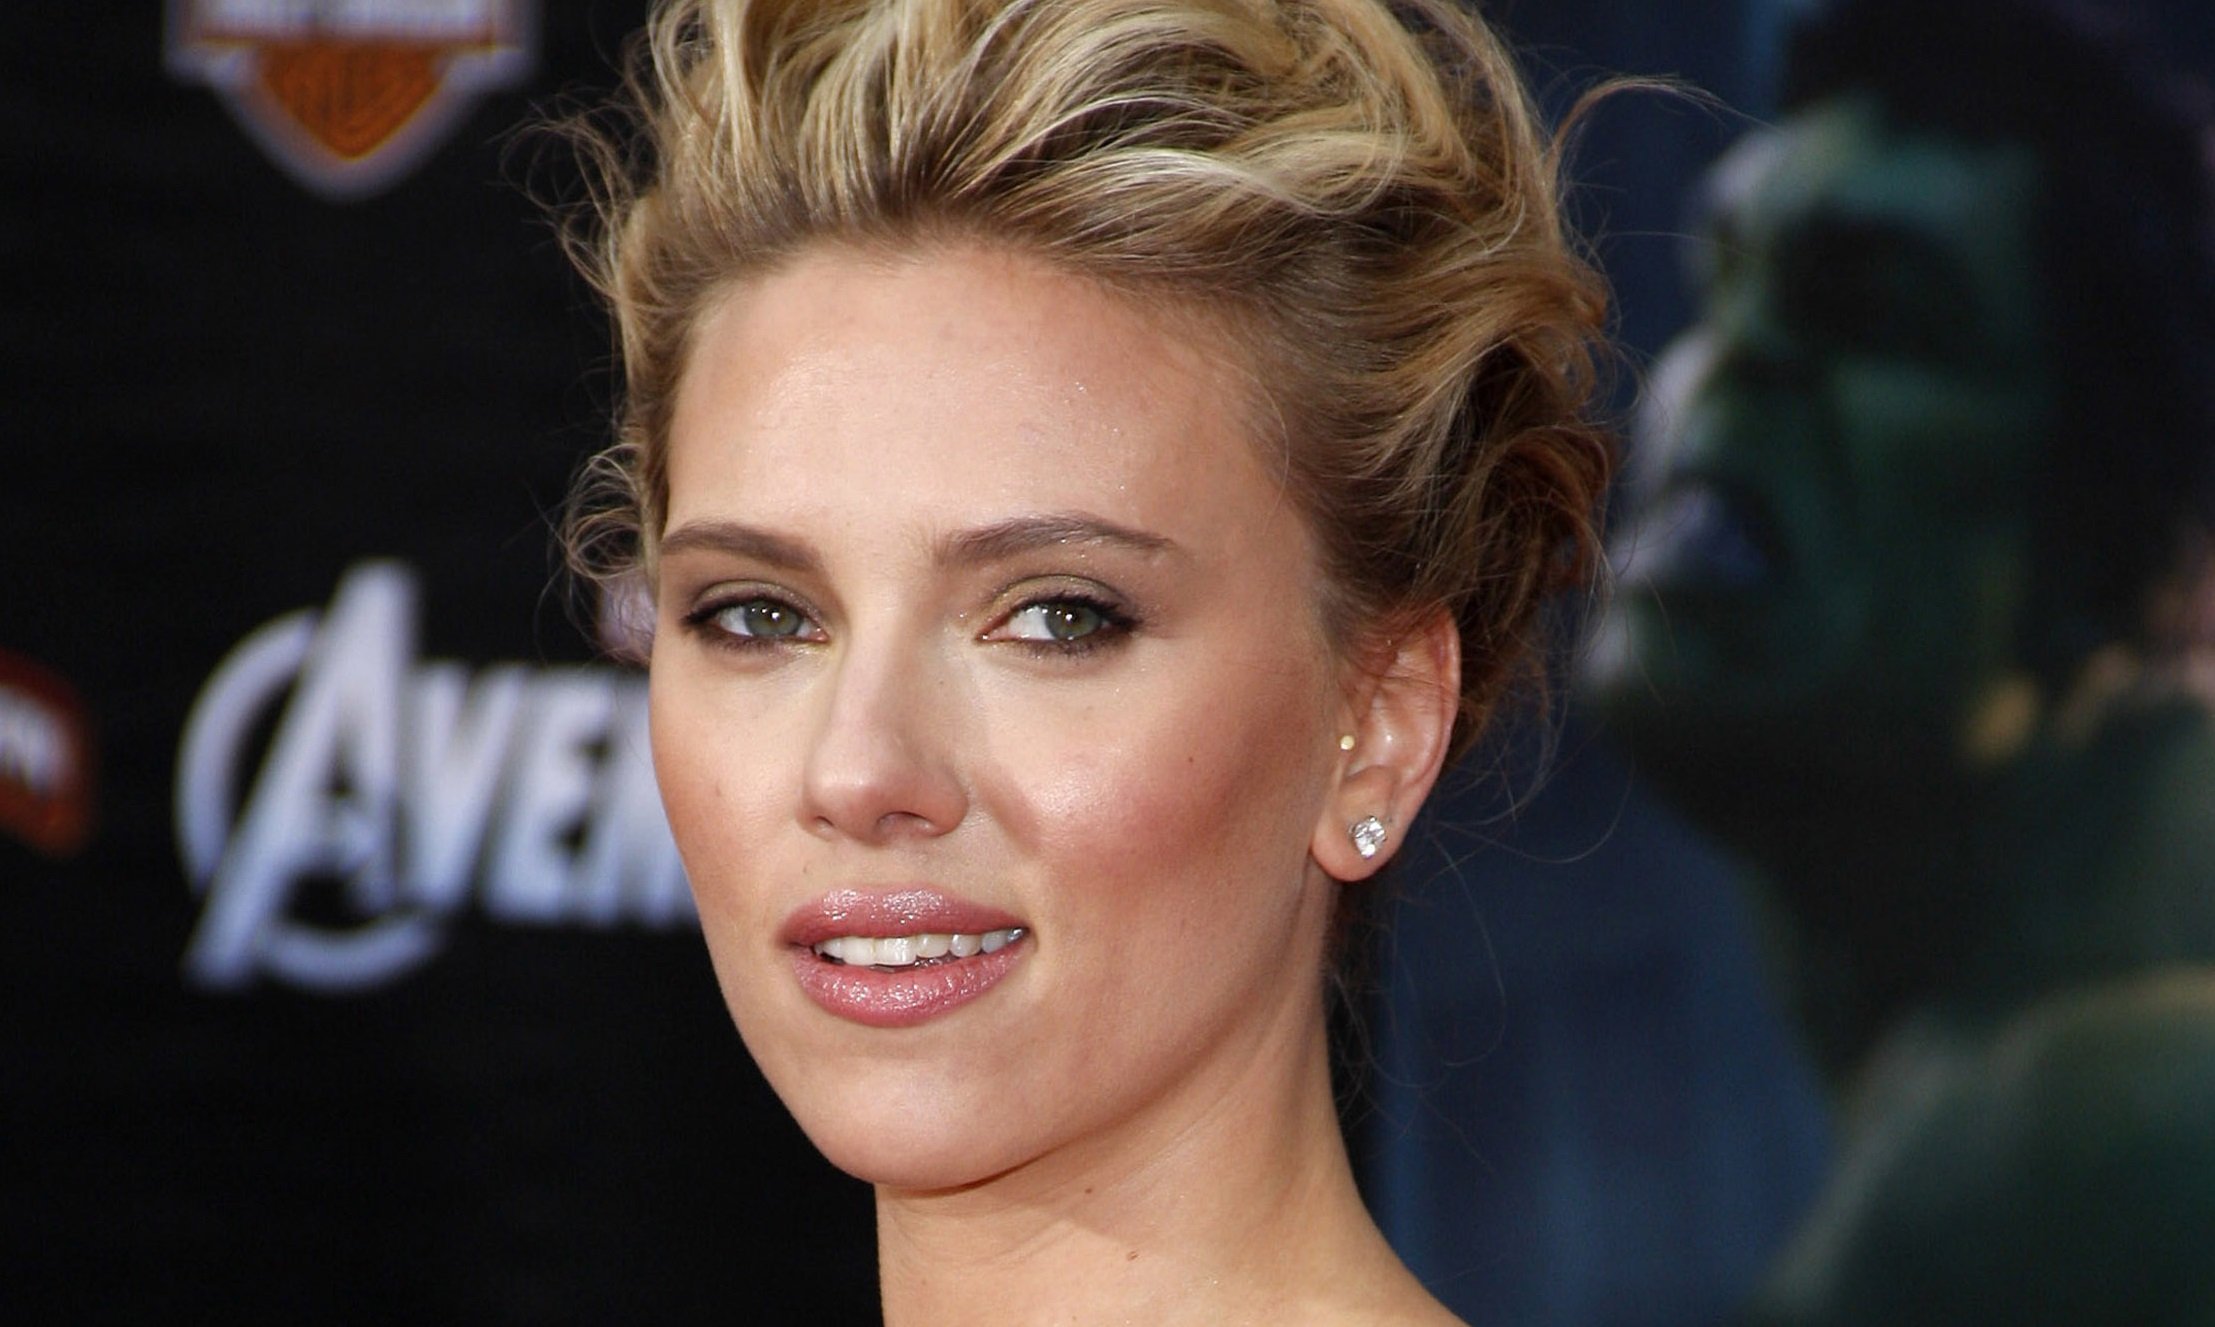 Nejvíc sexy herečka na světě je podle vás Scarlett Johansson